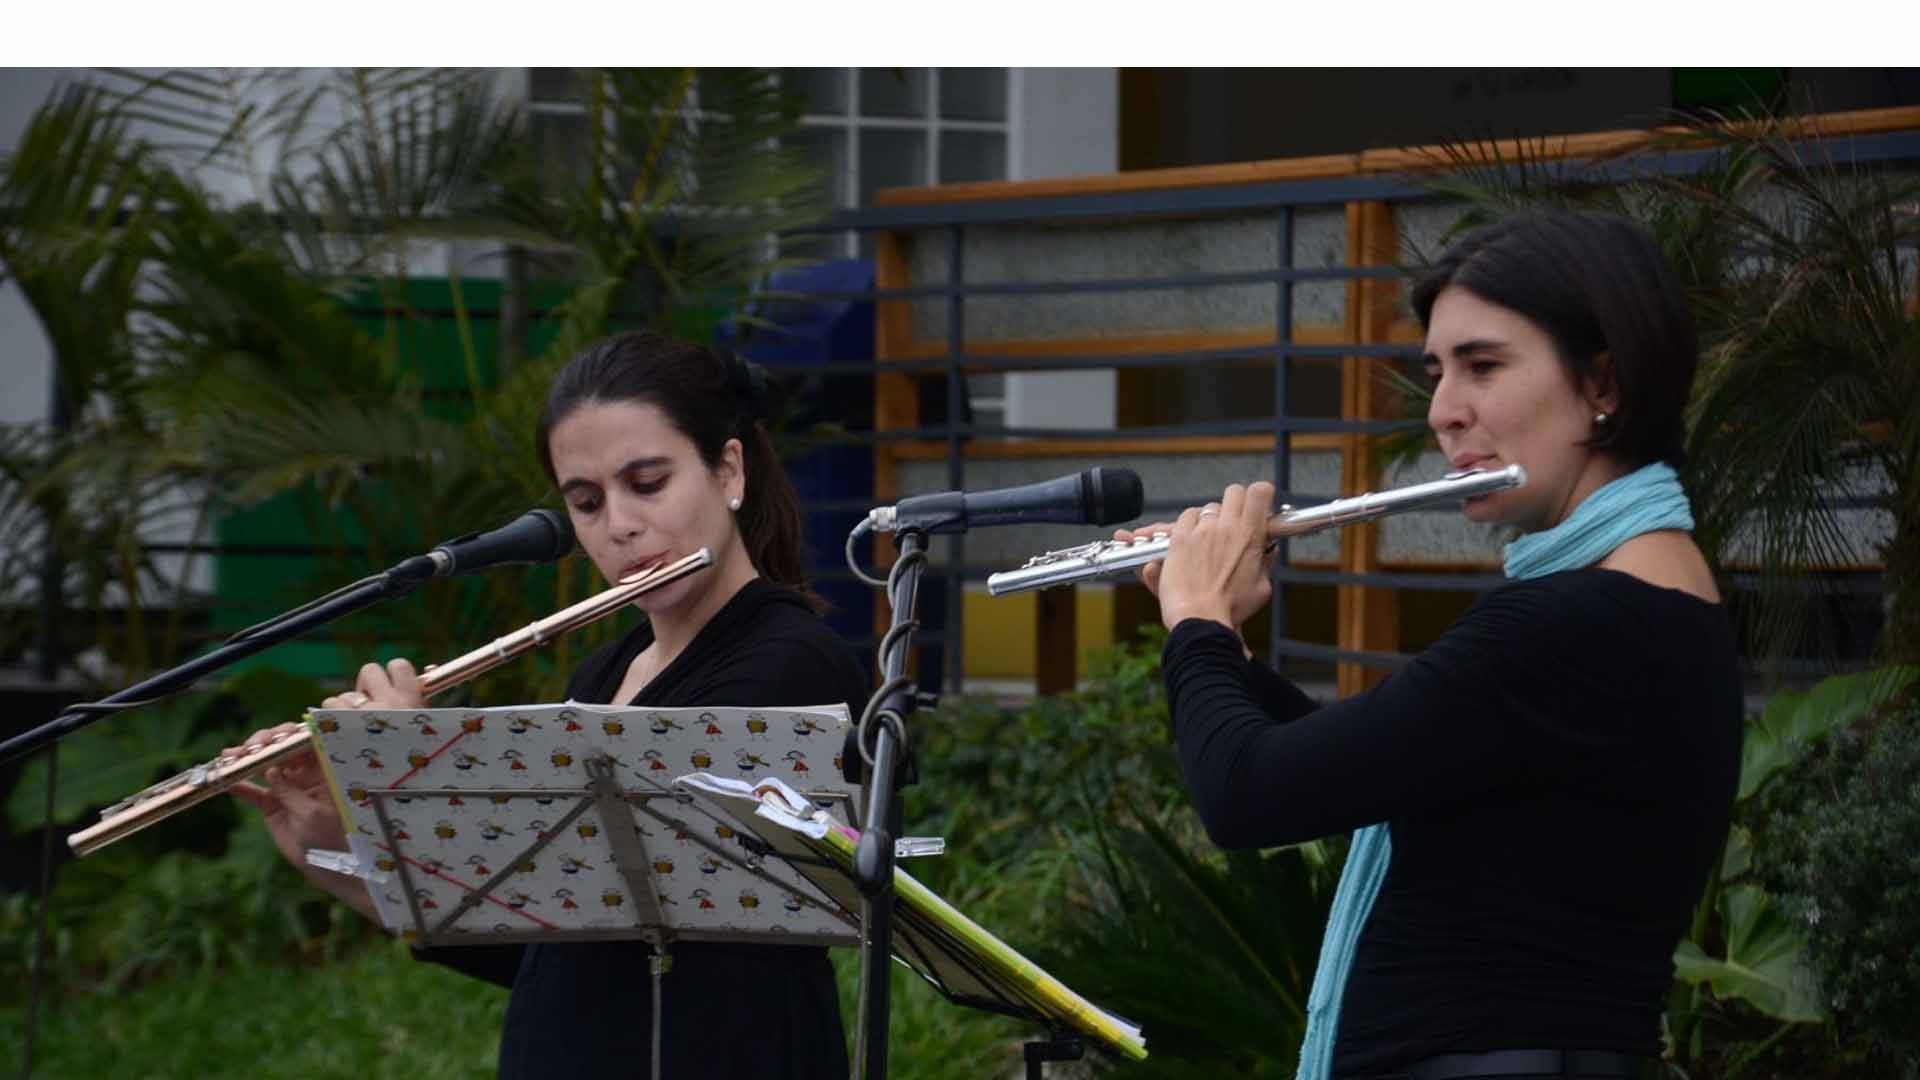 Los capitalinos están invitados a ser parte del recital que será ofrecido por distintos artistas venezolanos en los jardines del Teresa Carreño